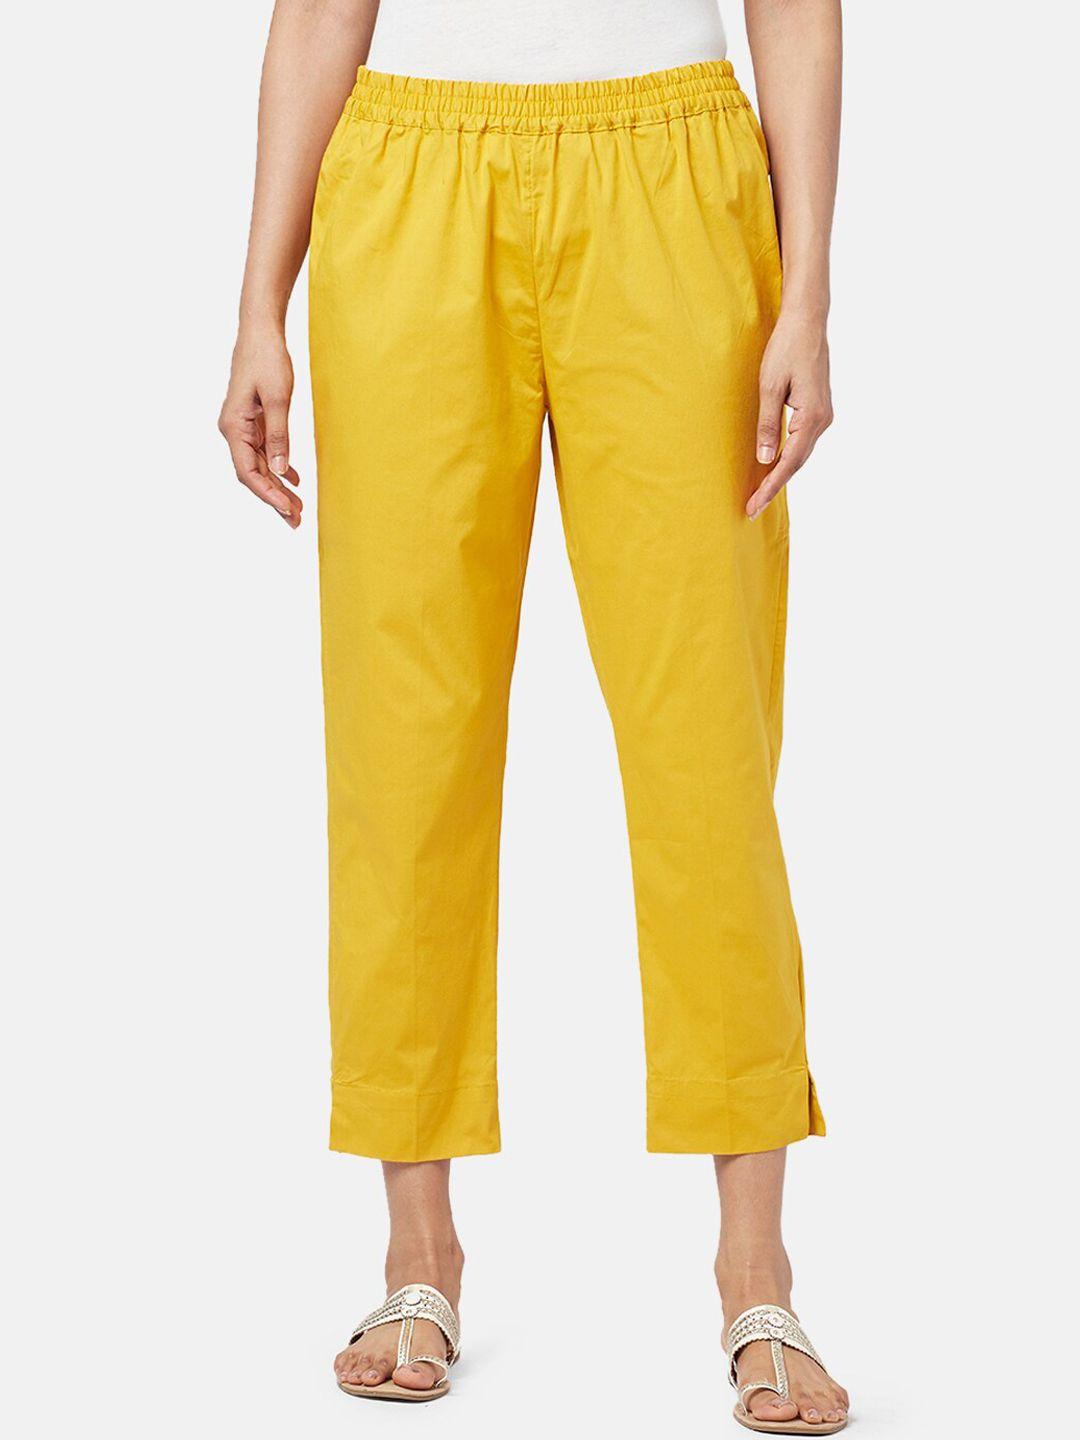 rangmanch-by-pantaloons-women-cotton-trousers